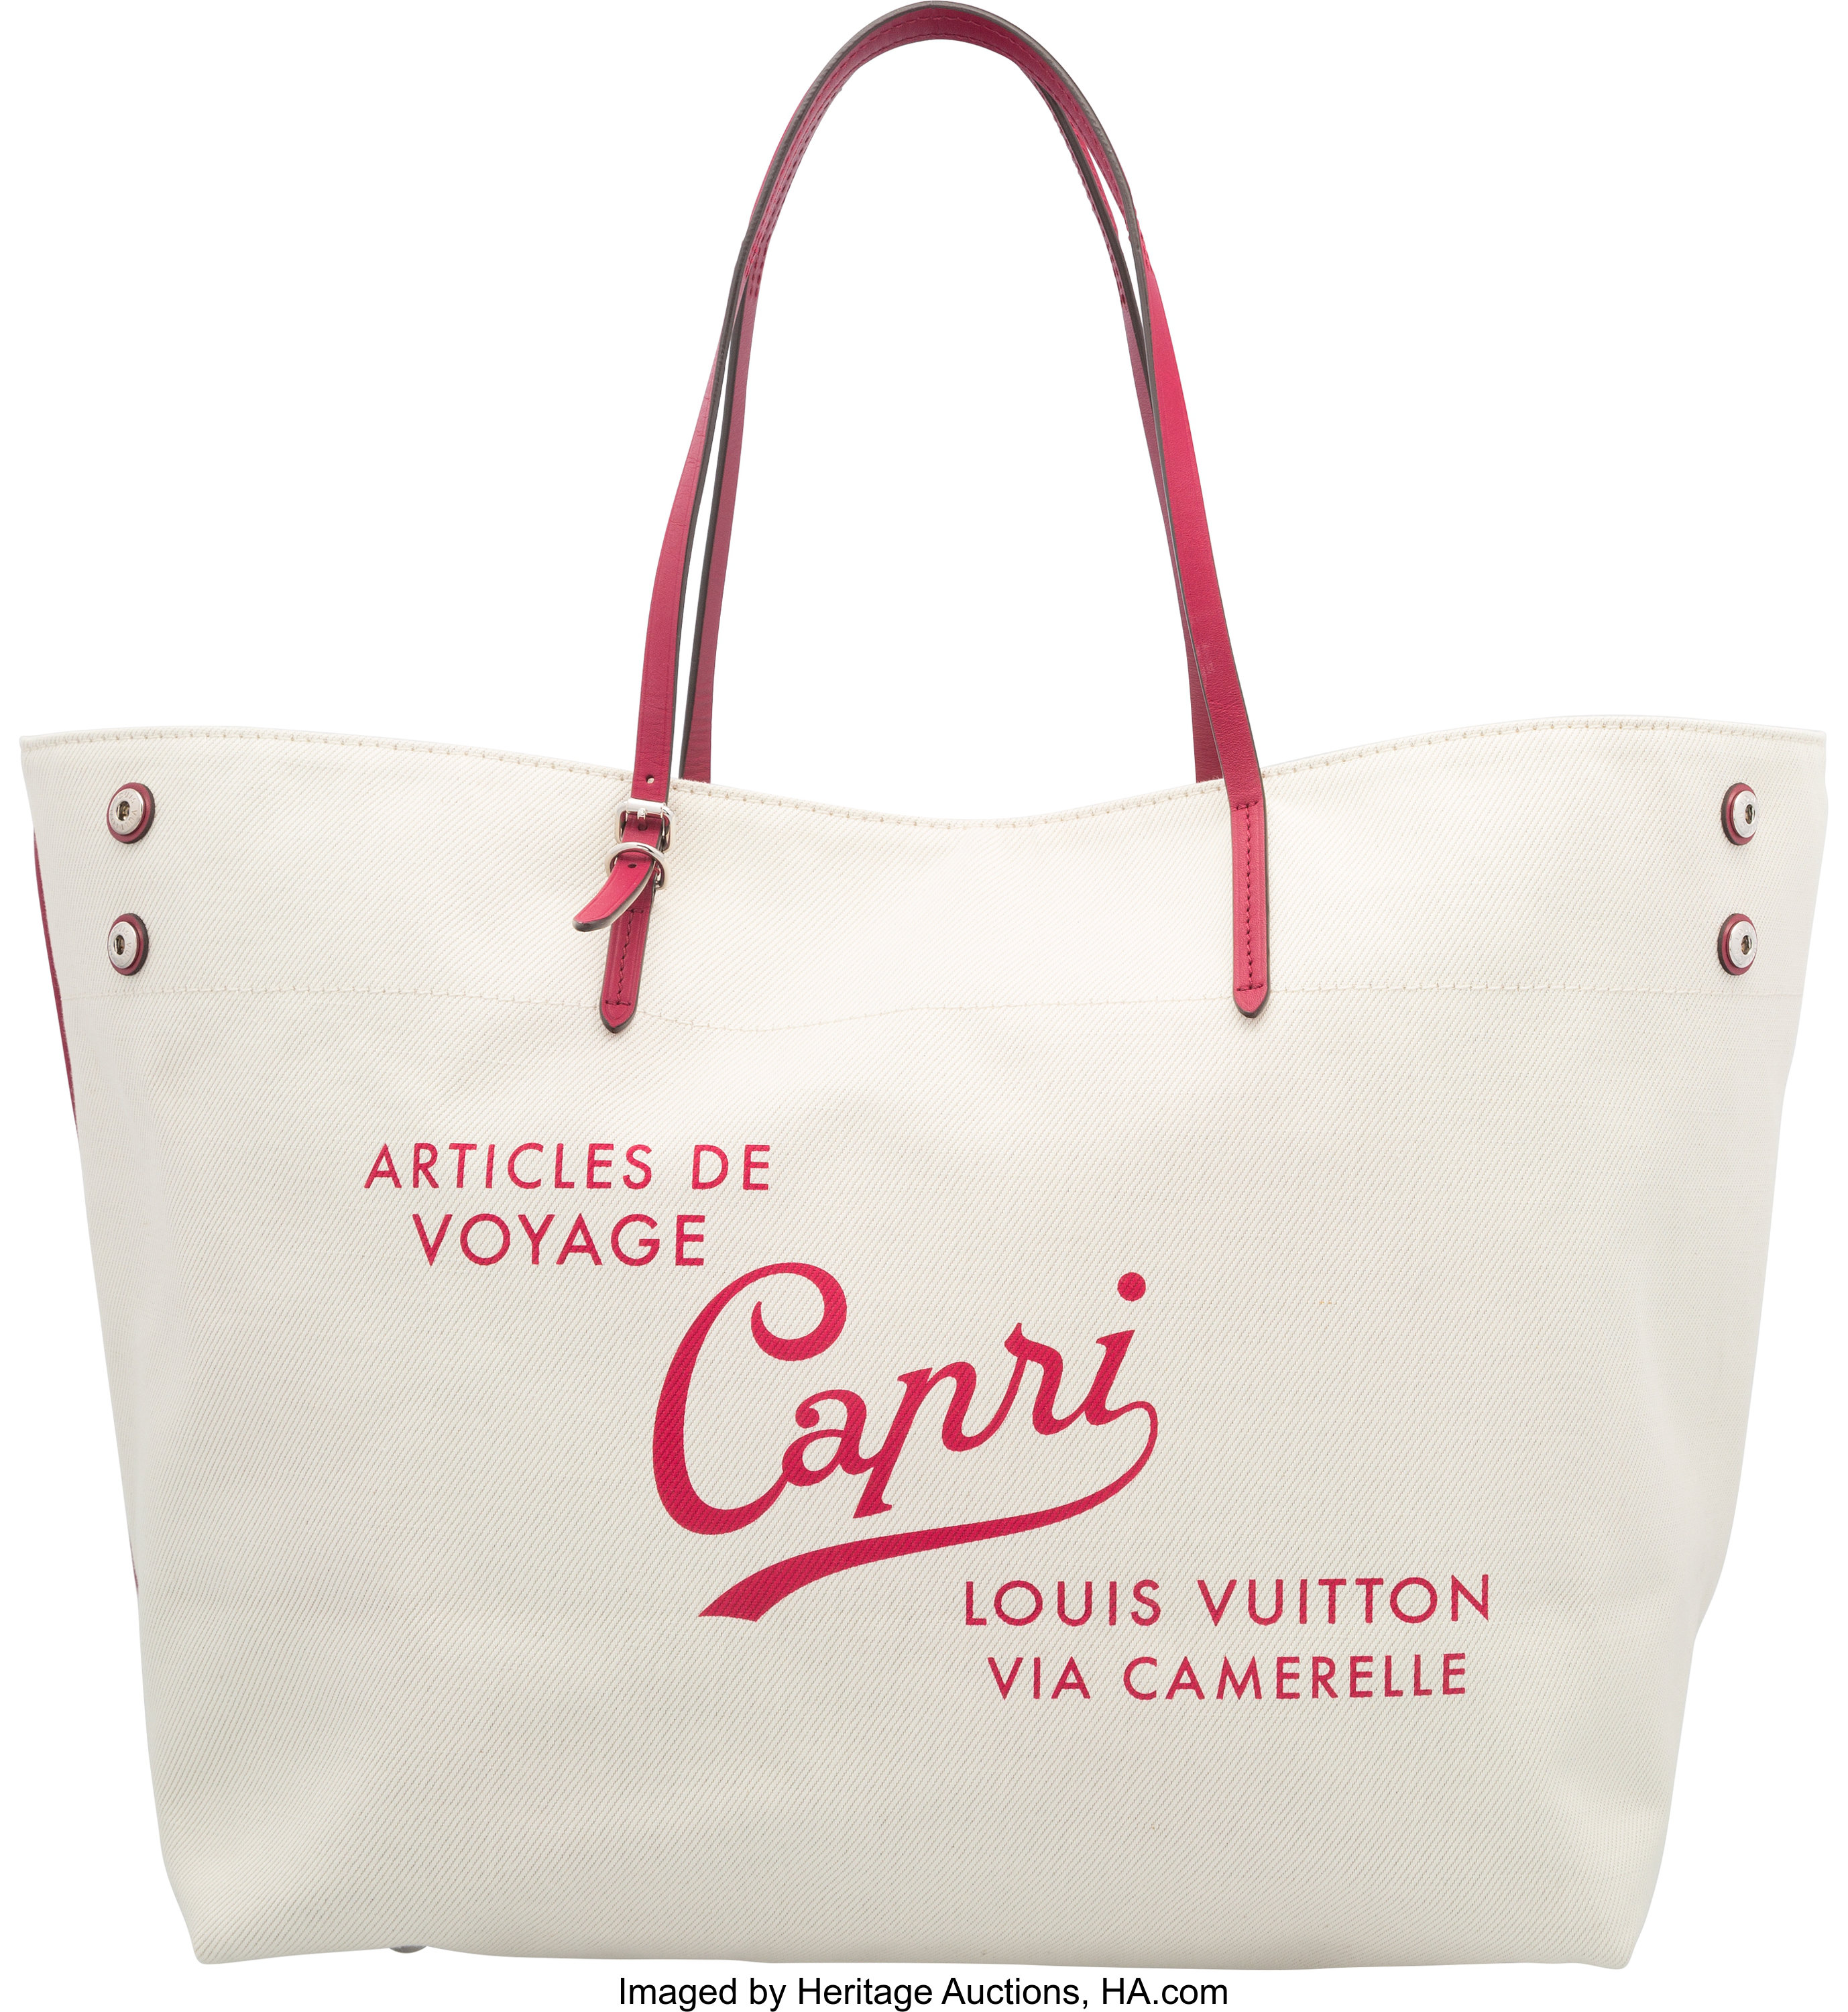 Sold at Auction: Louis Vuitton, LOUIS VUITTON 'CABAS ARTICLES DE VOYAGES'  TOTE BAG